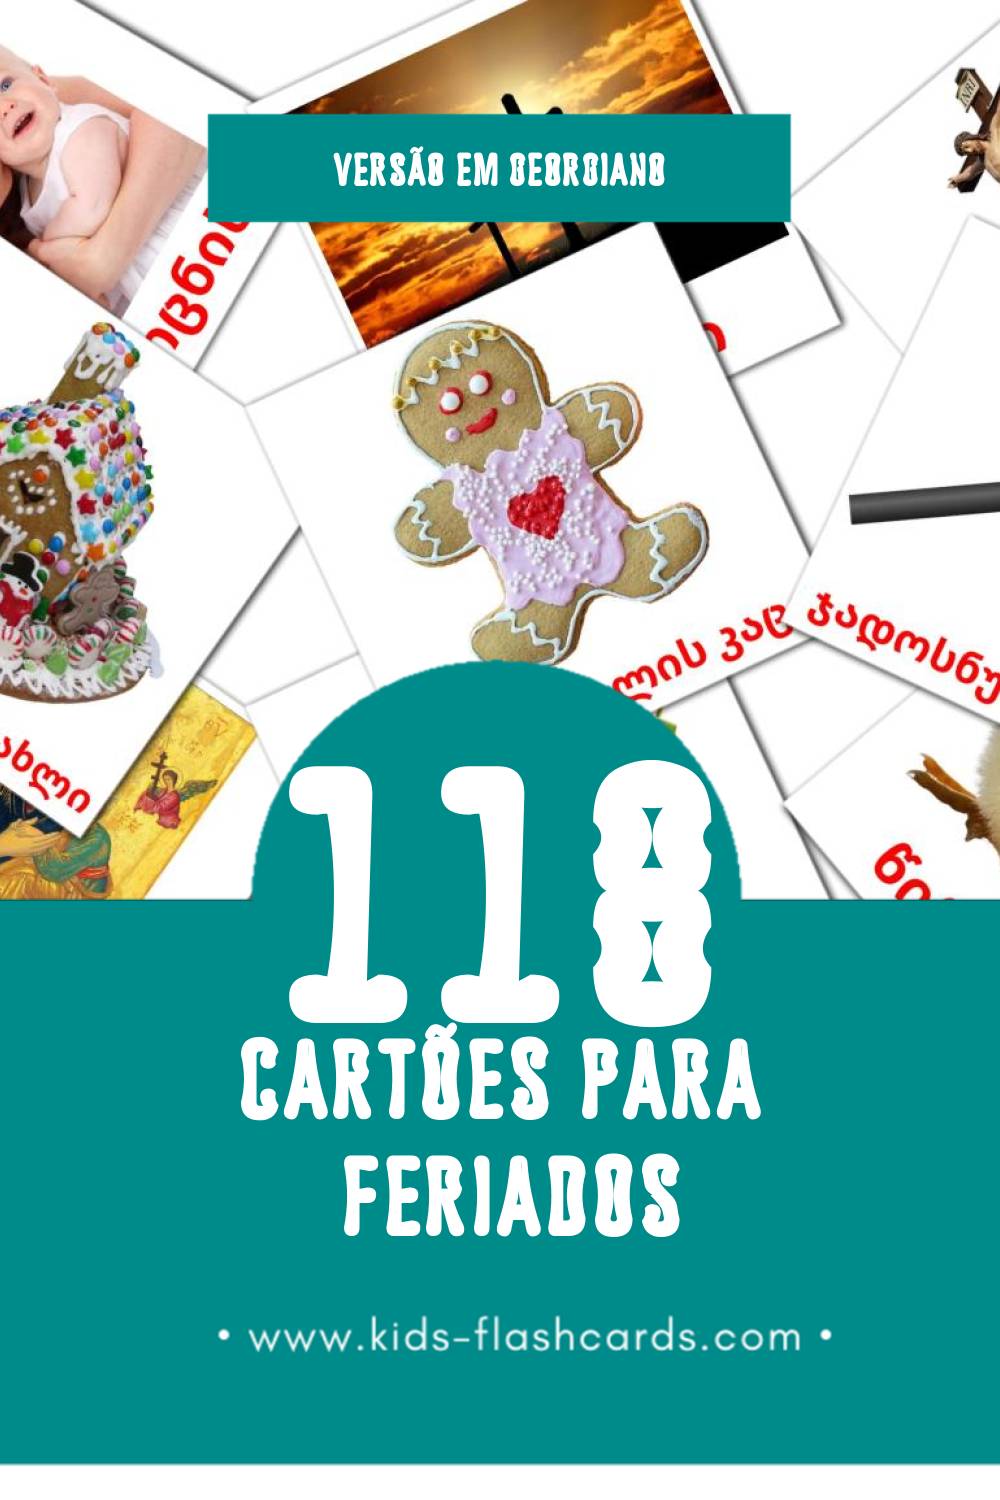 Flashcards de დღესასწაულები Visuais para Toddlers (118 cartões em Georgiano)